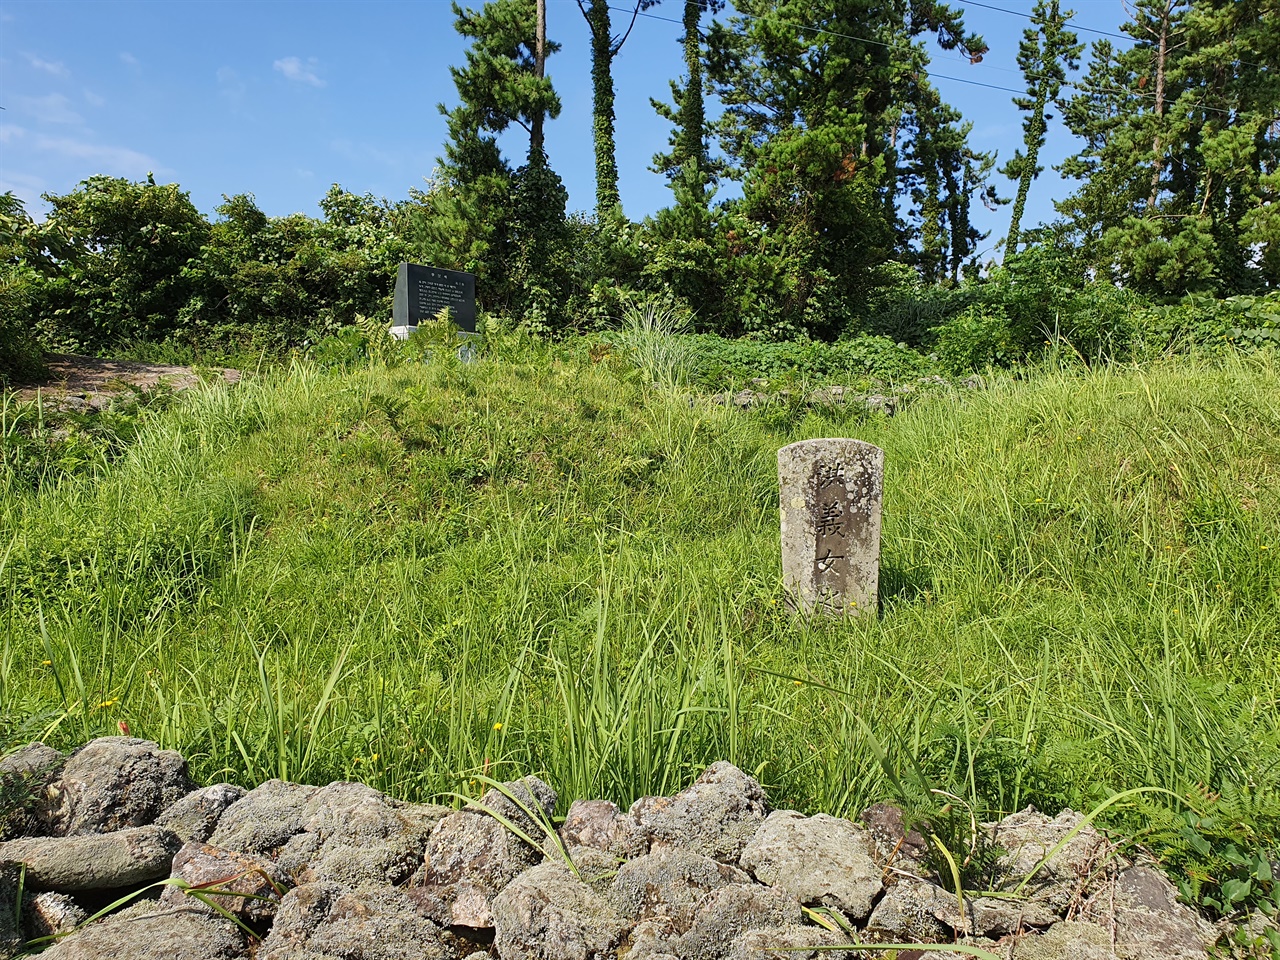 '洪義女之墓'(홍의녀지묘)라고 새긴 낡은 비석이 세워져 있고, 무덤가에는 잡초가 무성하다.